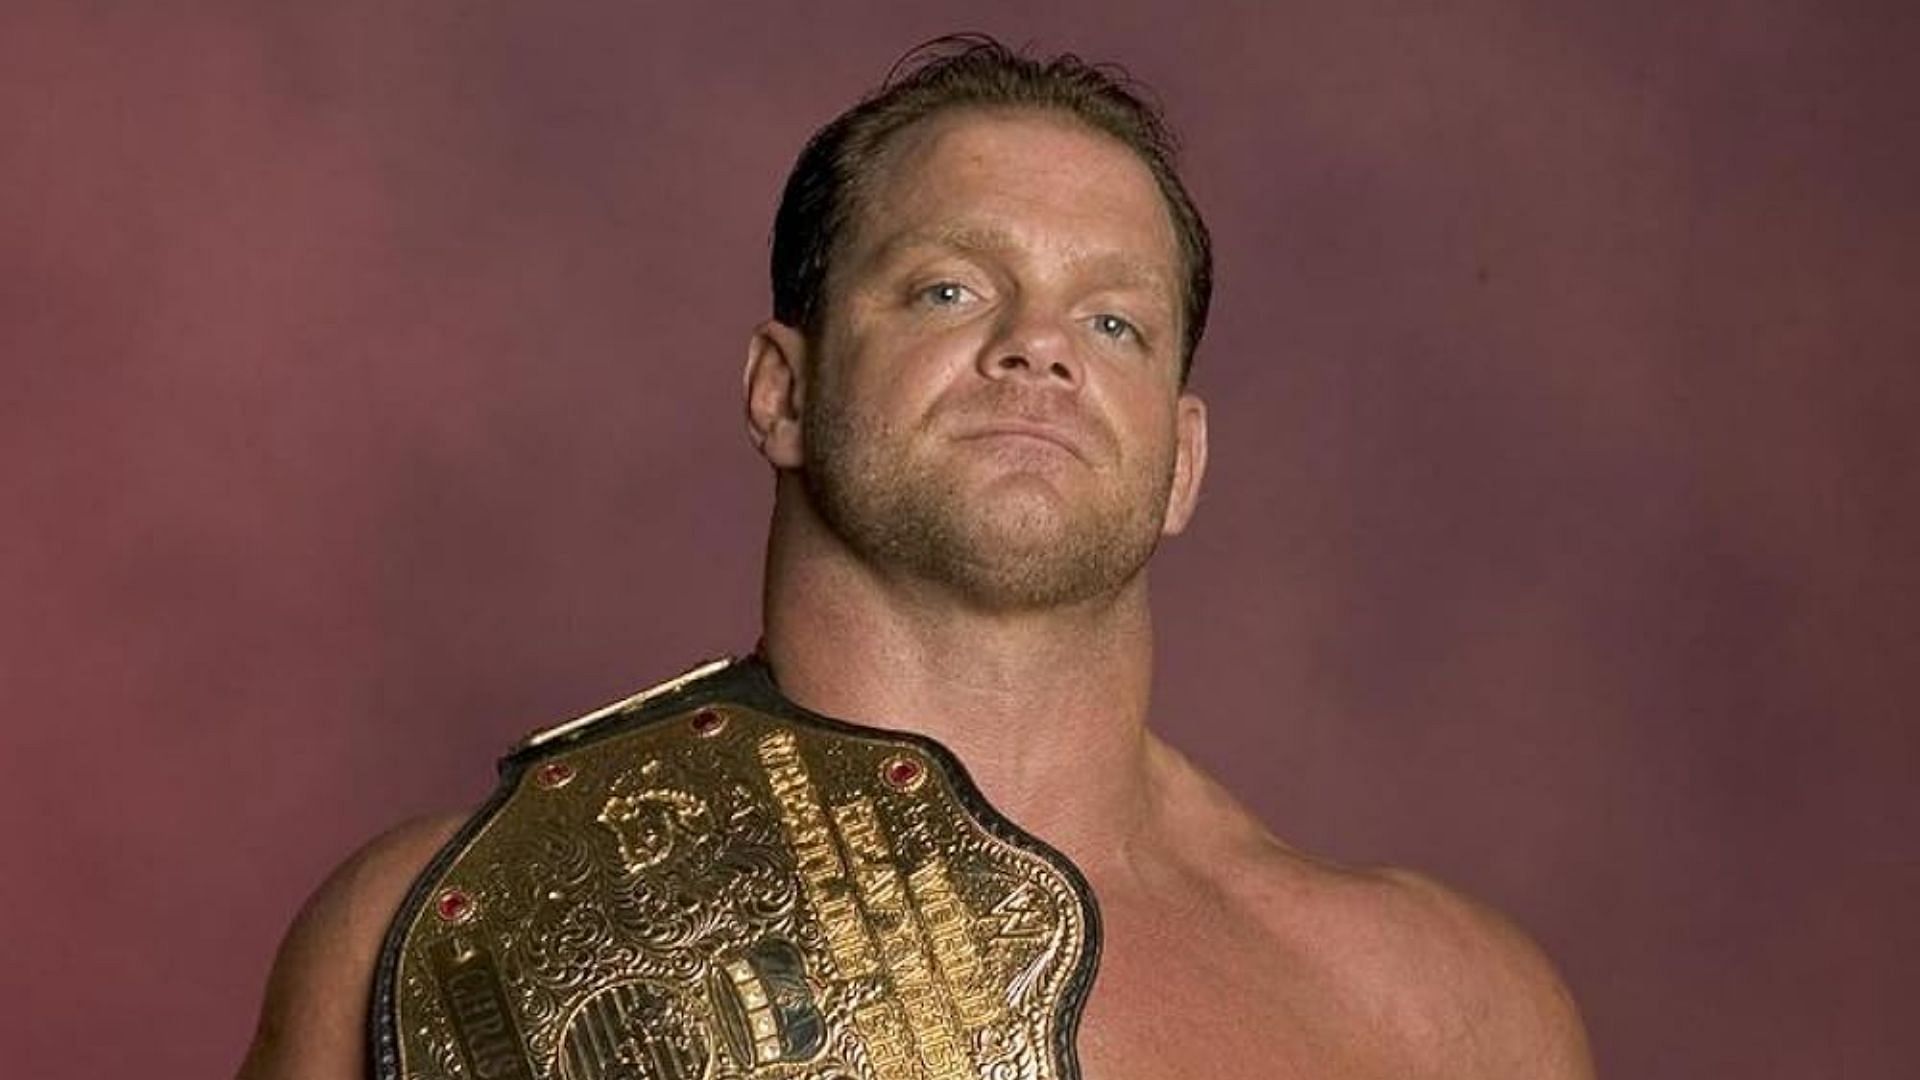 Former WCW and WWE wrestler Chris Benoit